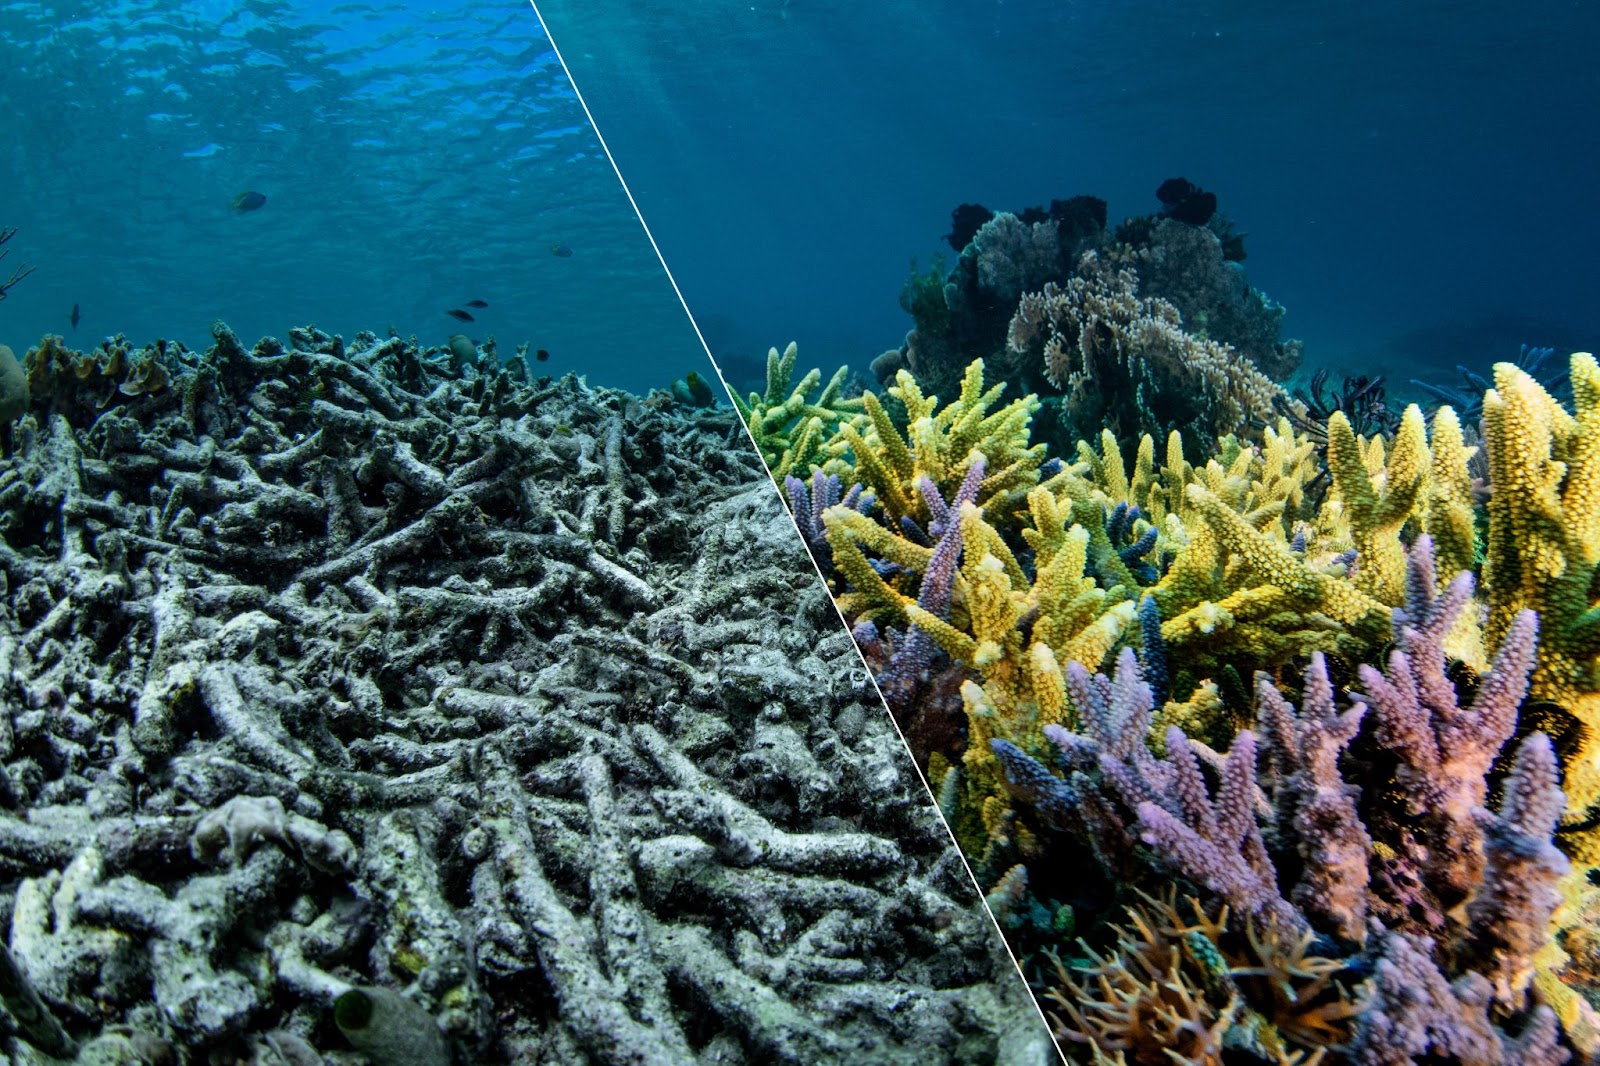 Ein Bild einer Koralle, in zwei Hälften geteilt: Links ist die graue,farblose Koralle zusammengebrochen, während das Meer darüber kräuselt. Aufder rechten Seite sehen wir aufrecht stehende Korallen, leuchtend in Gelb,Lila und Rosa. Ein Kontrast zwischen sterbenden Korallen und gesundenKorallen.